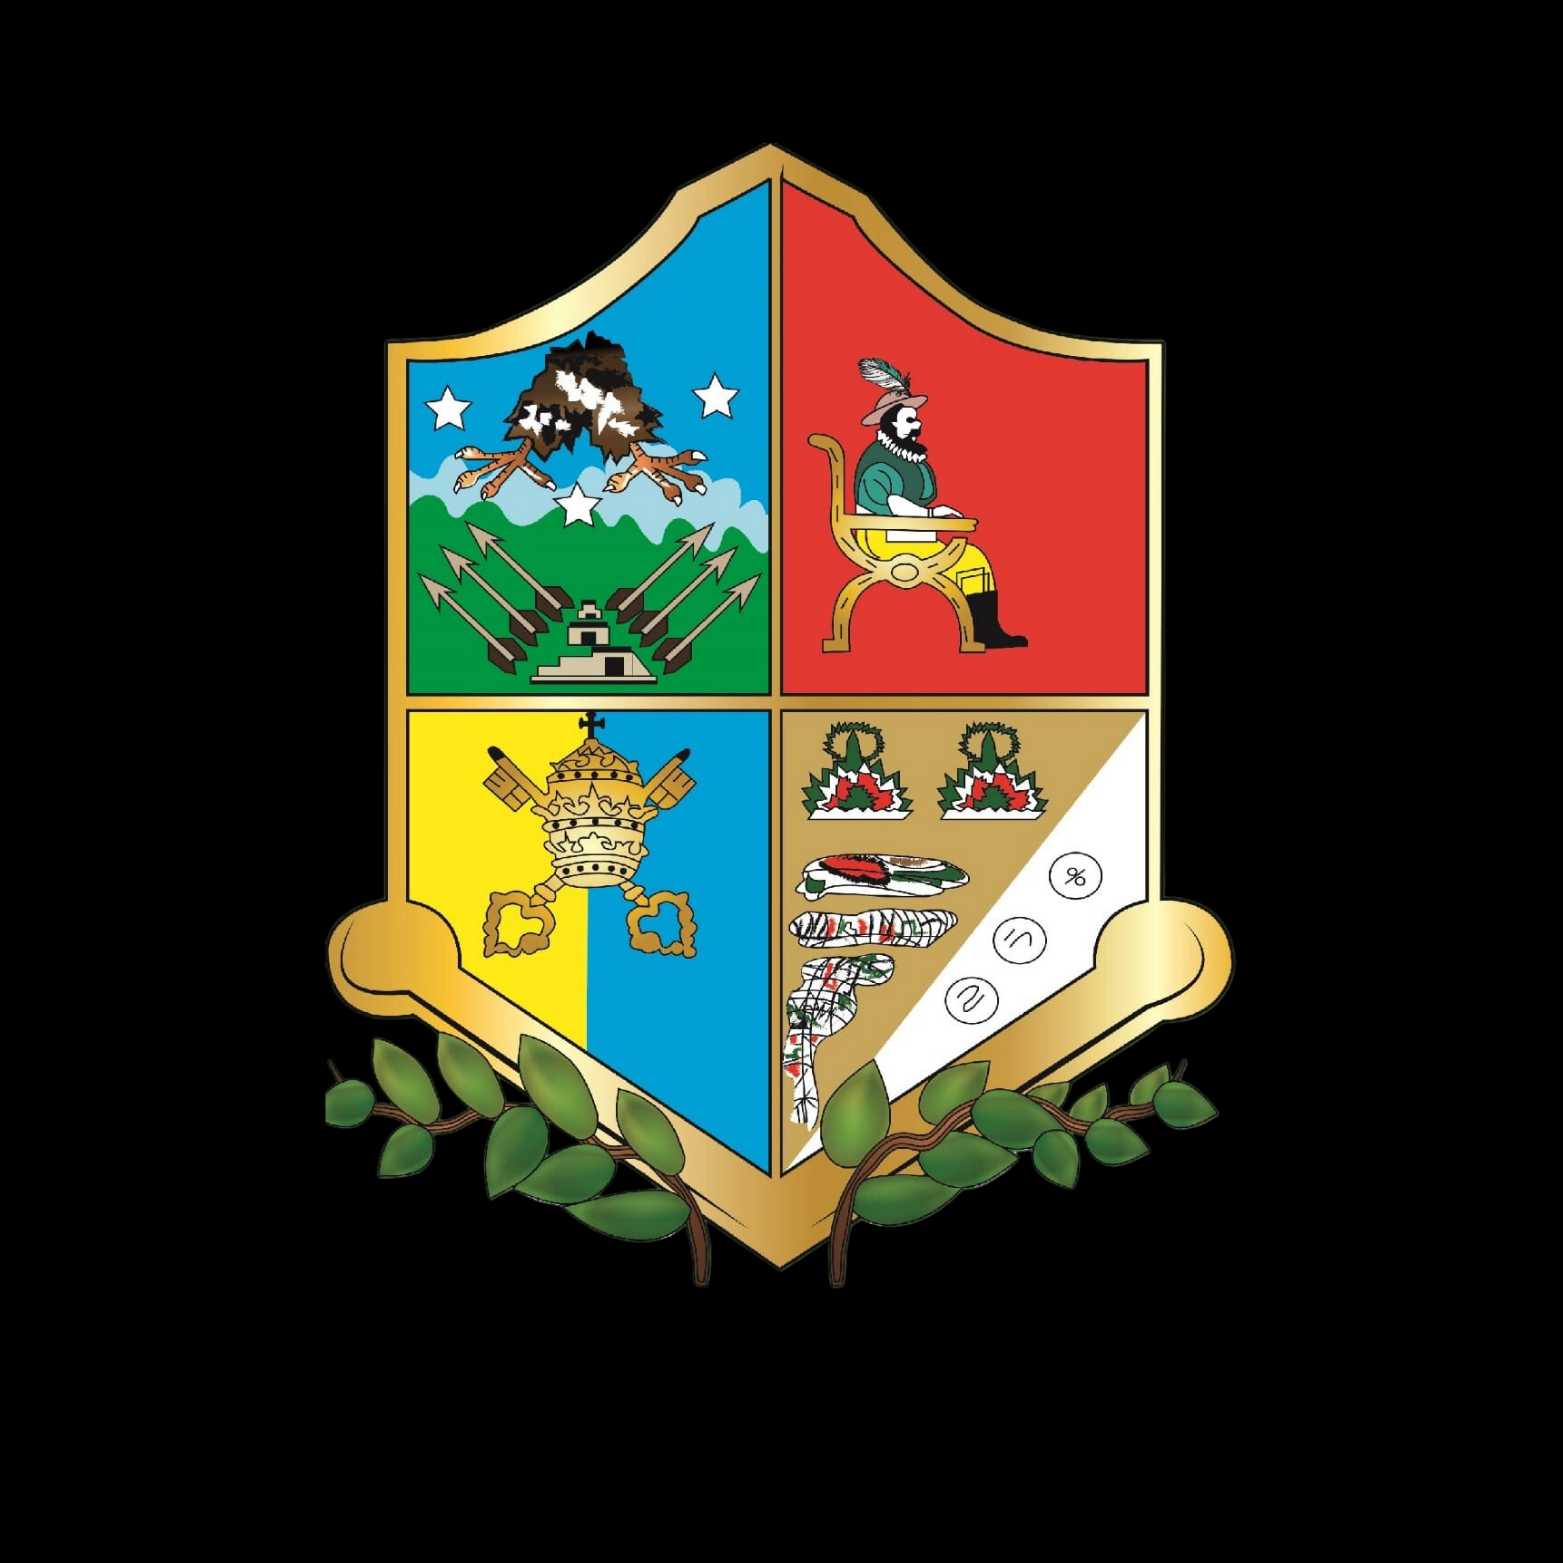 Logotipo del Órgano de Fiscalización Superior del estado de Veracruz